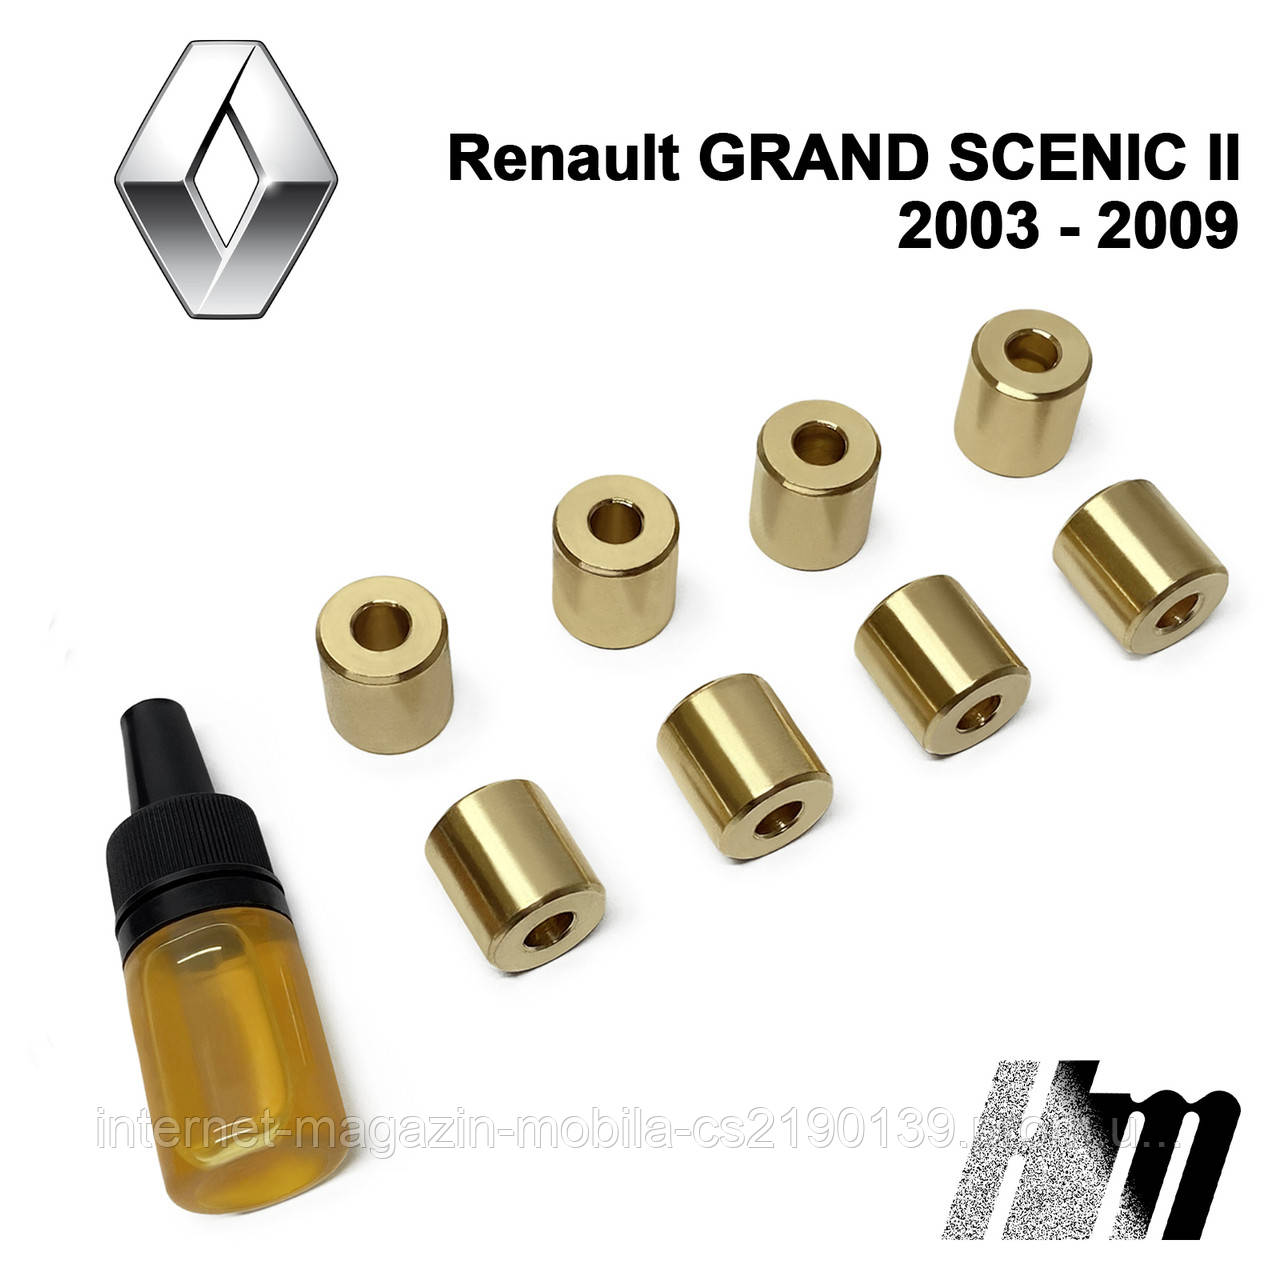 Ремкомплект обмежувачів дверей Renault Grand Scenic (II) 2003 — 2009, фіксатори, вкладки, втулки (металеві)